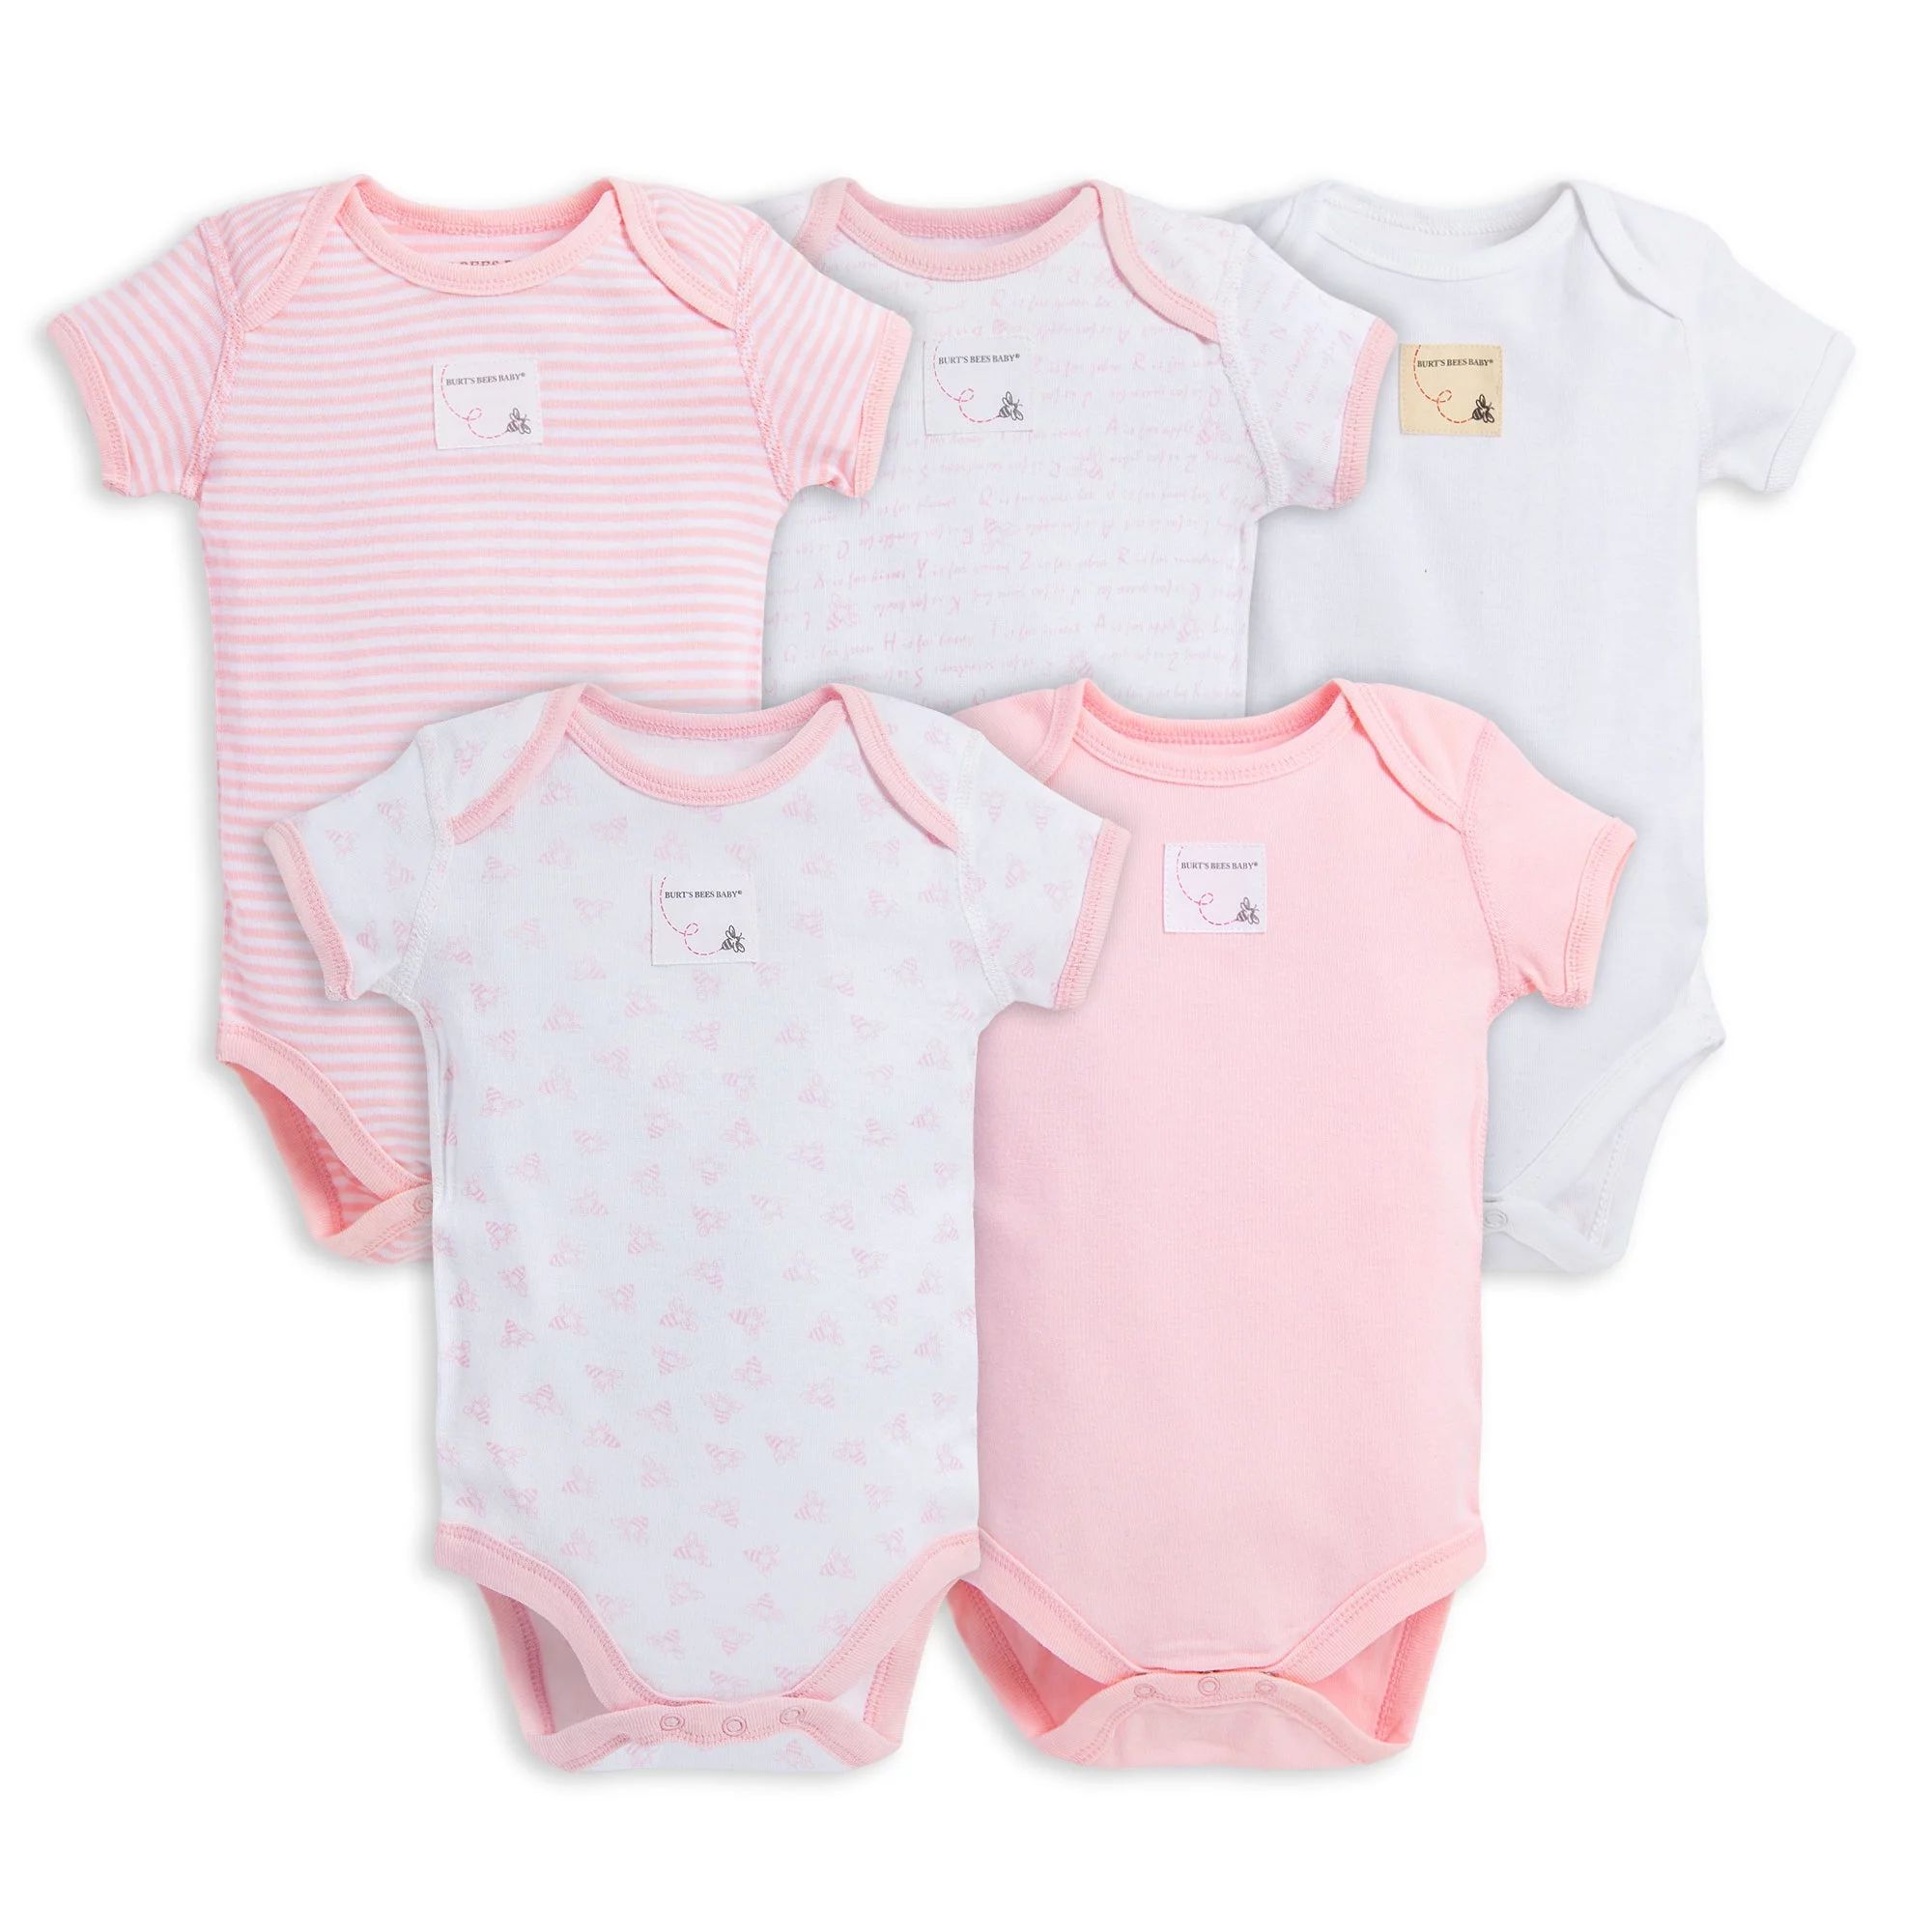 Burt's Bees Baby Organic Baby Girl Short Sleeve Bodysuits, 5-Pack | Walmart (US)